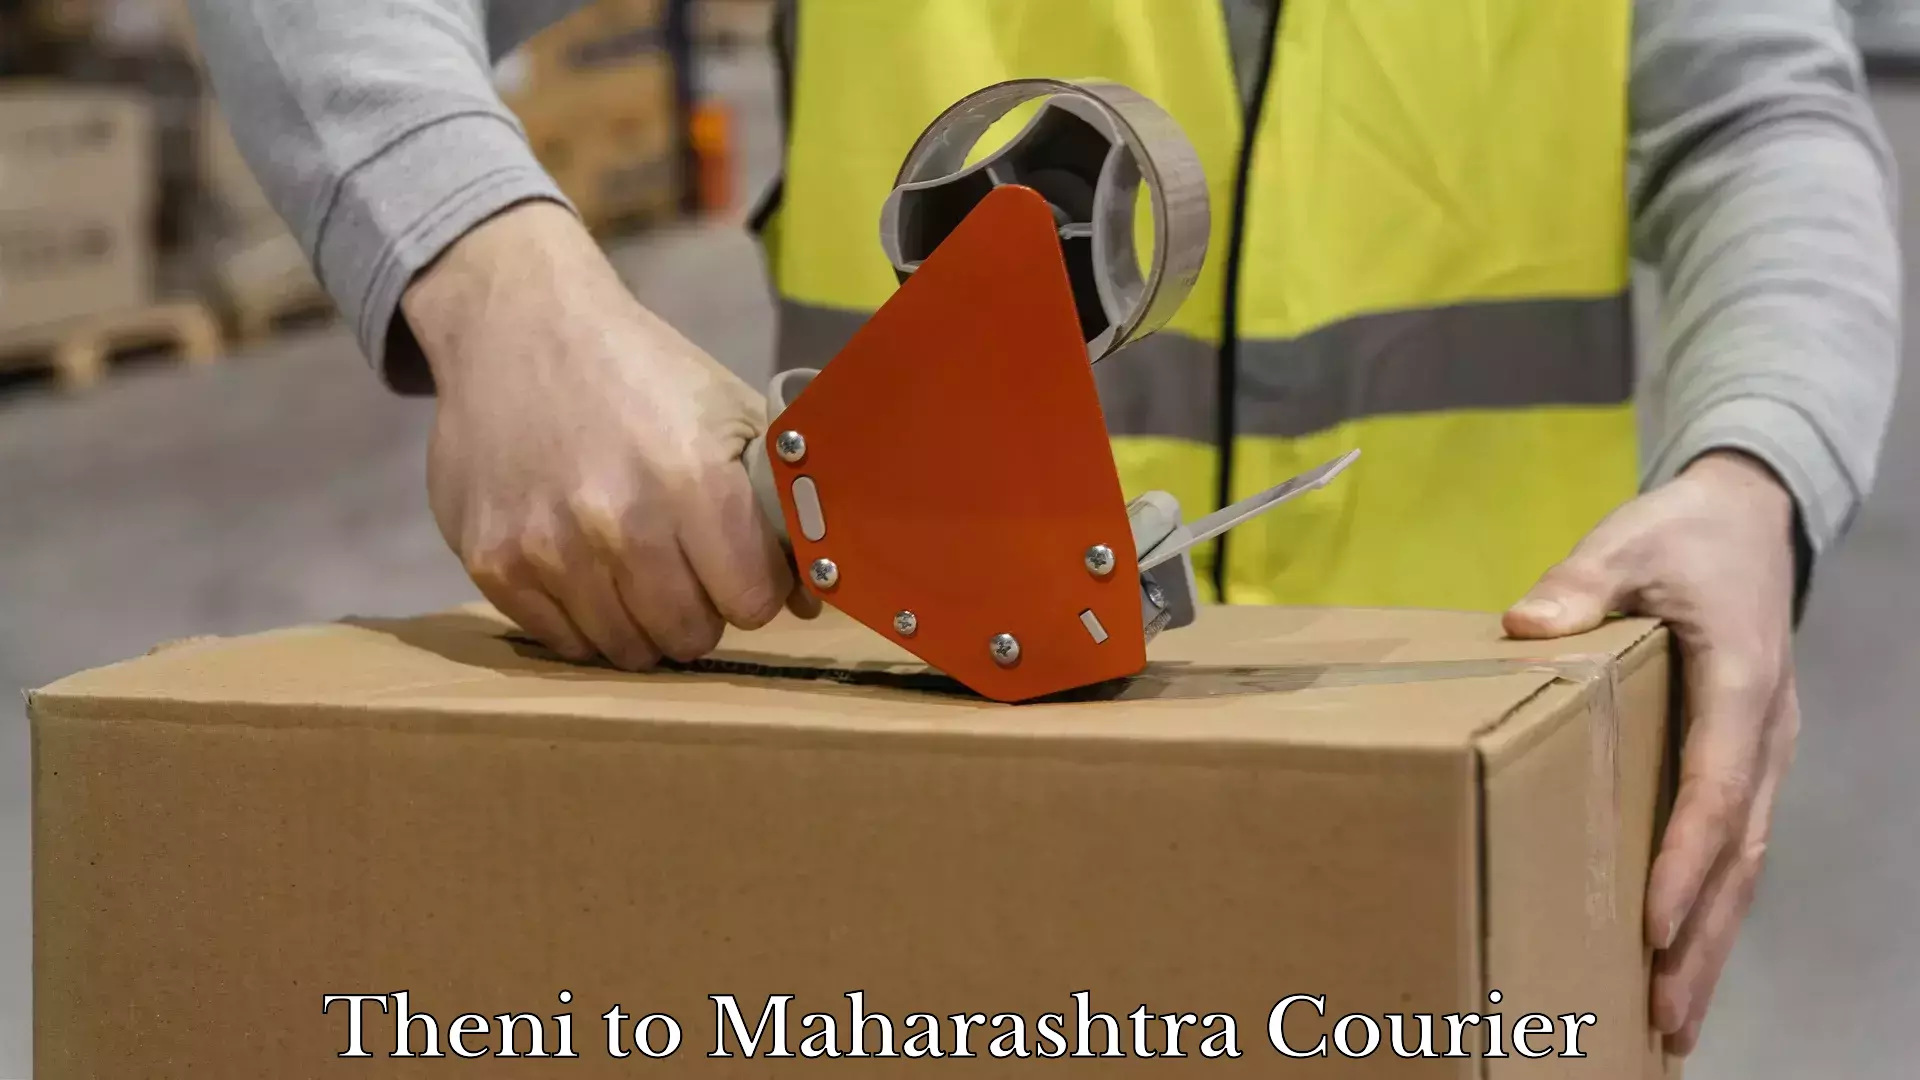 Furniture moving experts Theni to Maharashtra